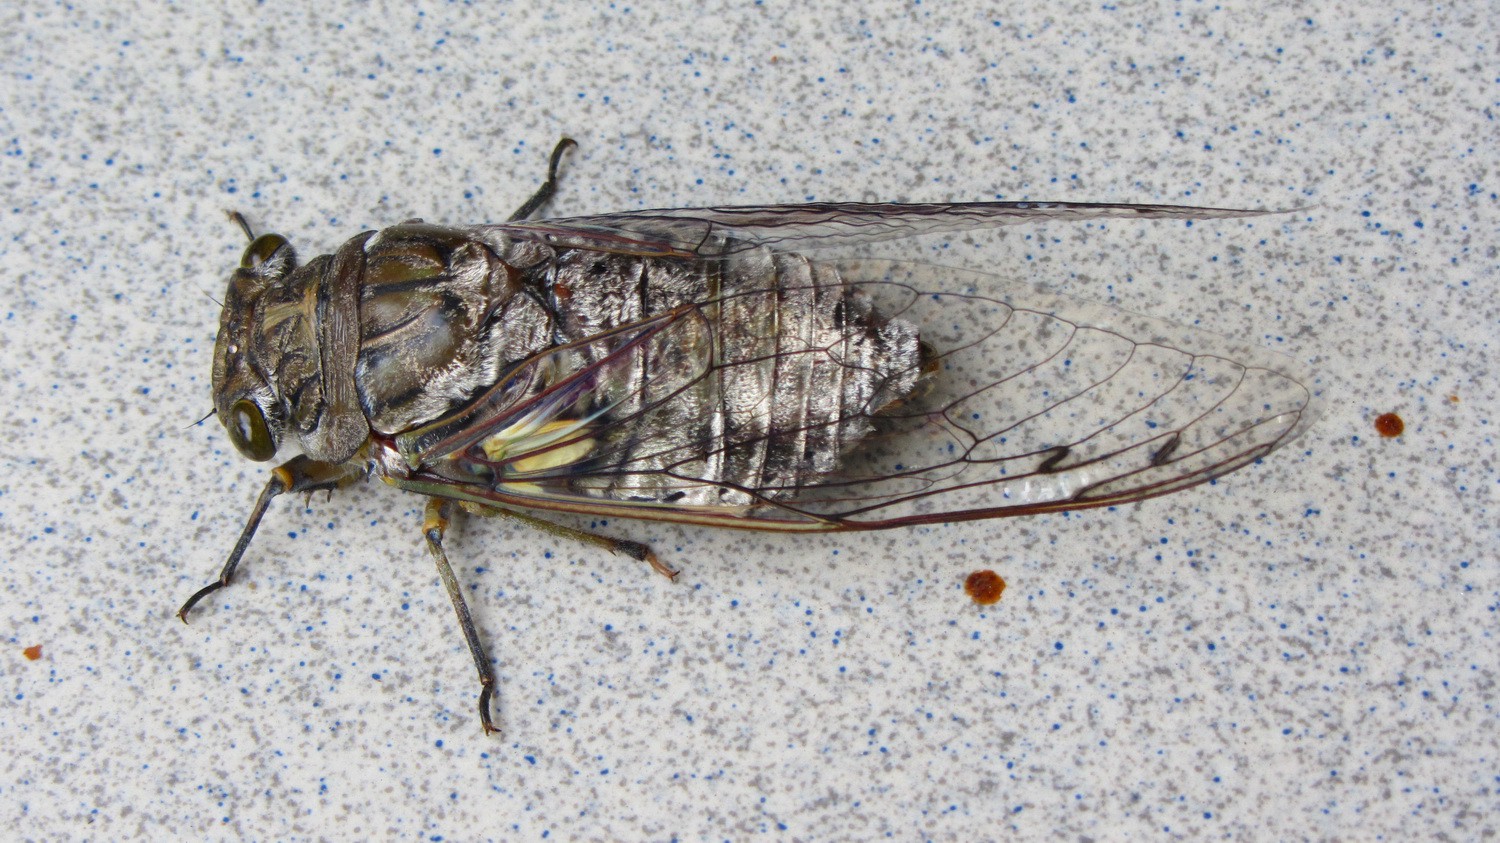 5 cm big bug in Pirenopolis